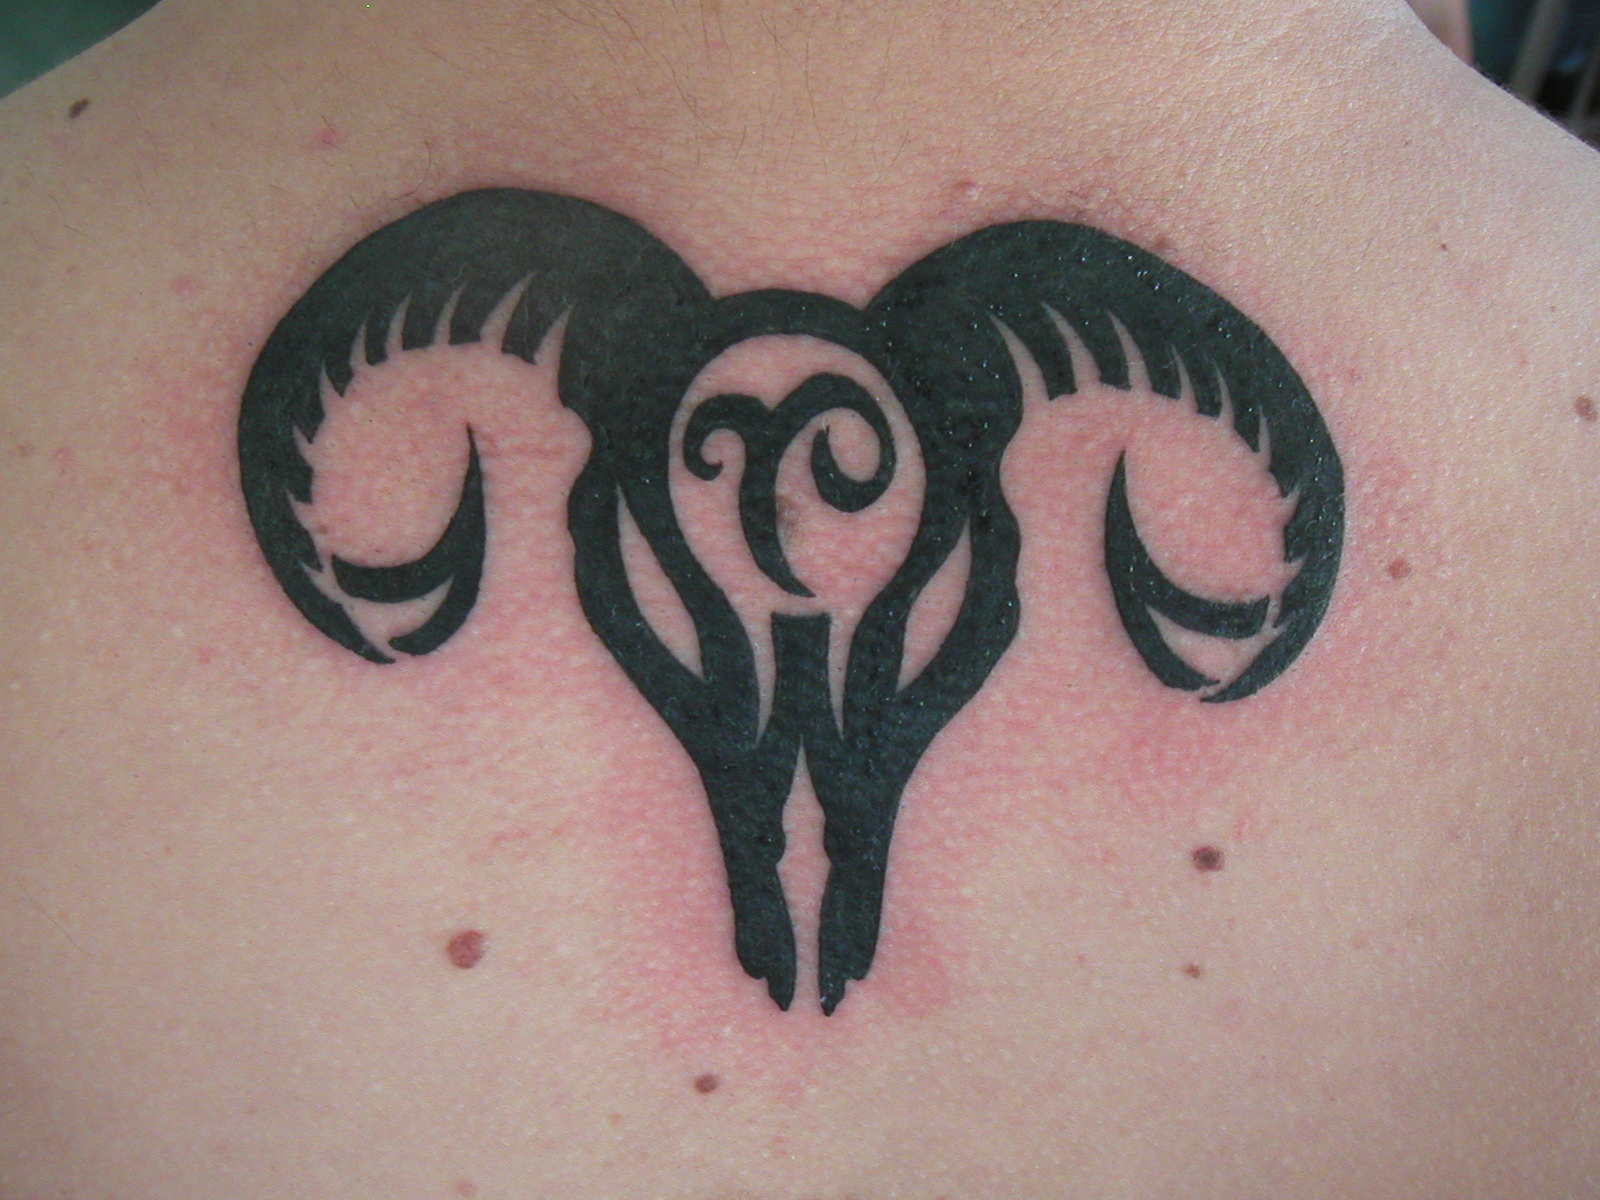 My Aries tattoo